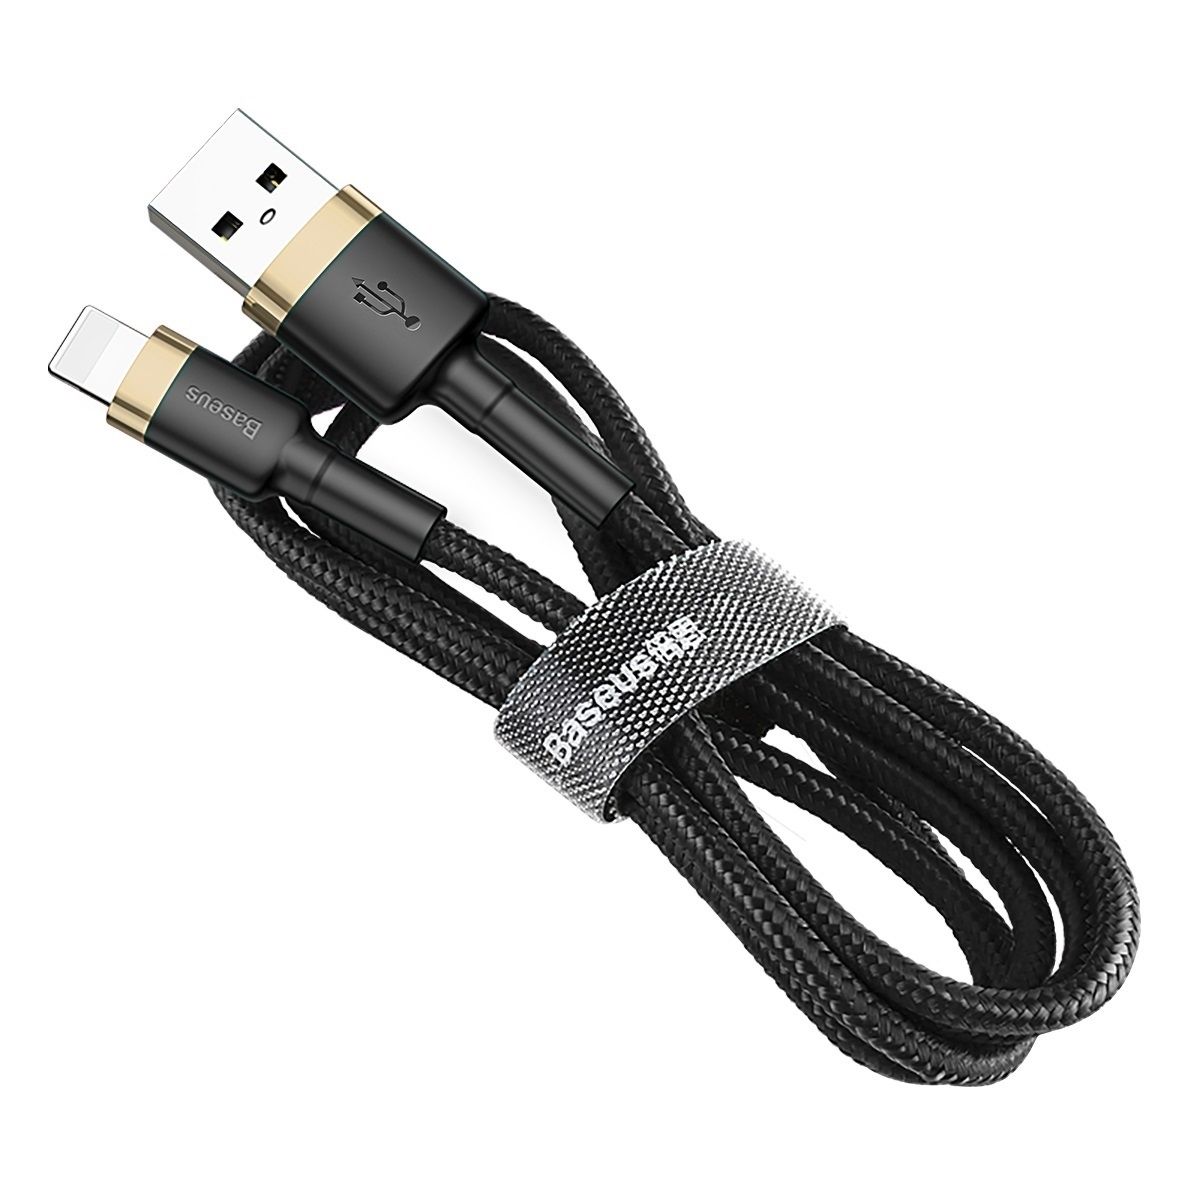 Кабель USB -  lightning Baseus cafule Cable 1 м, черный